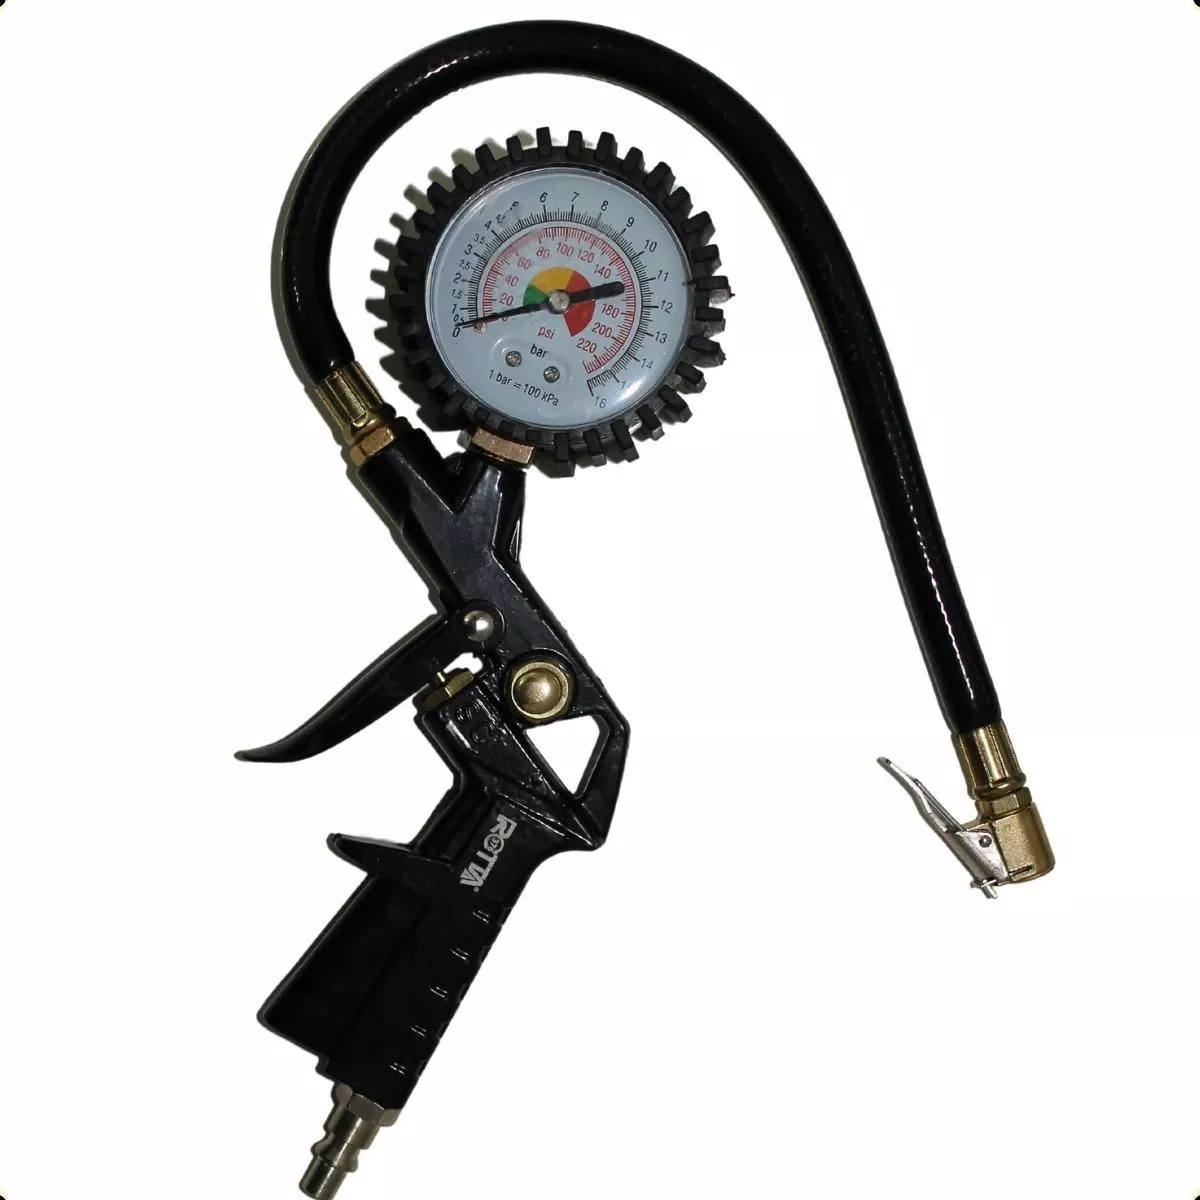 Segunda imagem para pesquisa de calibrador de pneus com manometro